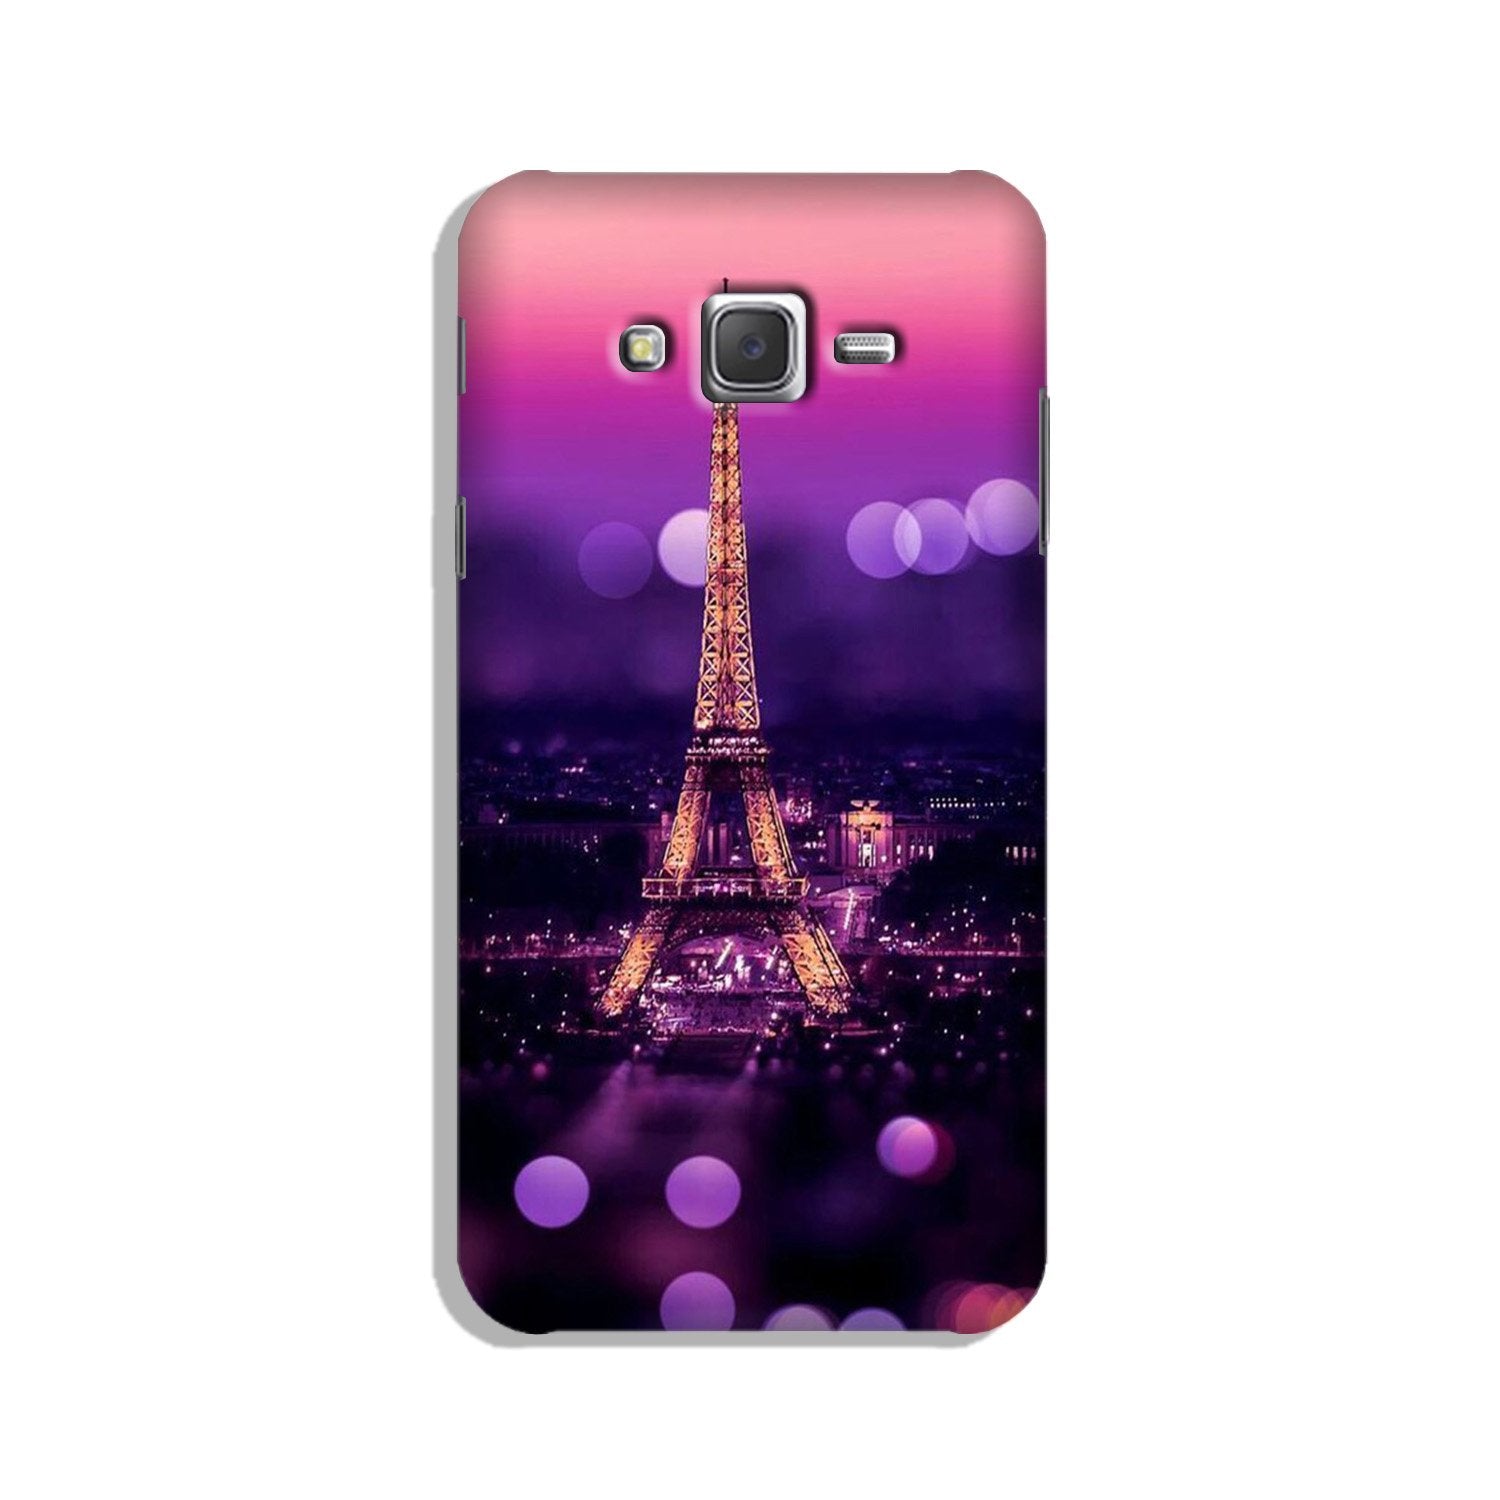 Eiffel Tower Case for Galaxy J7 (2015)